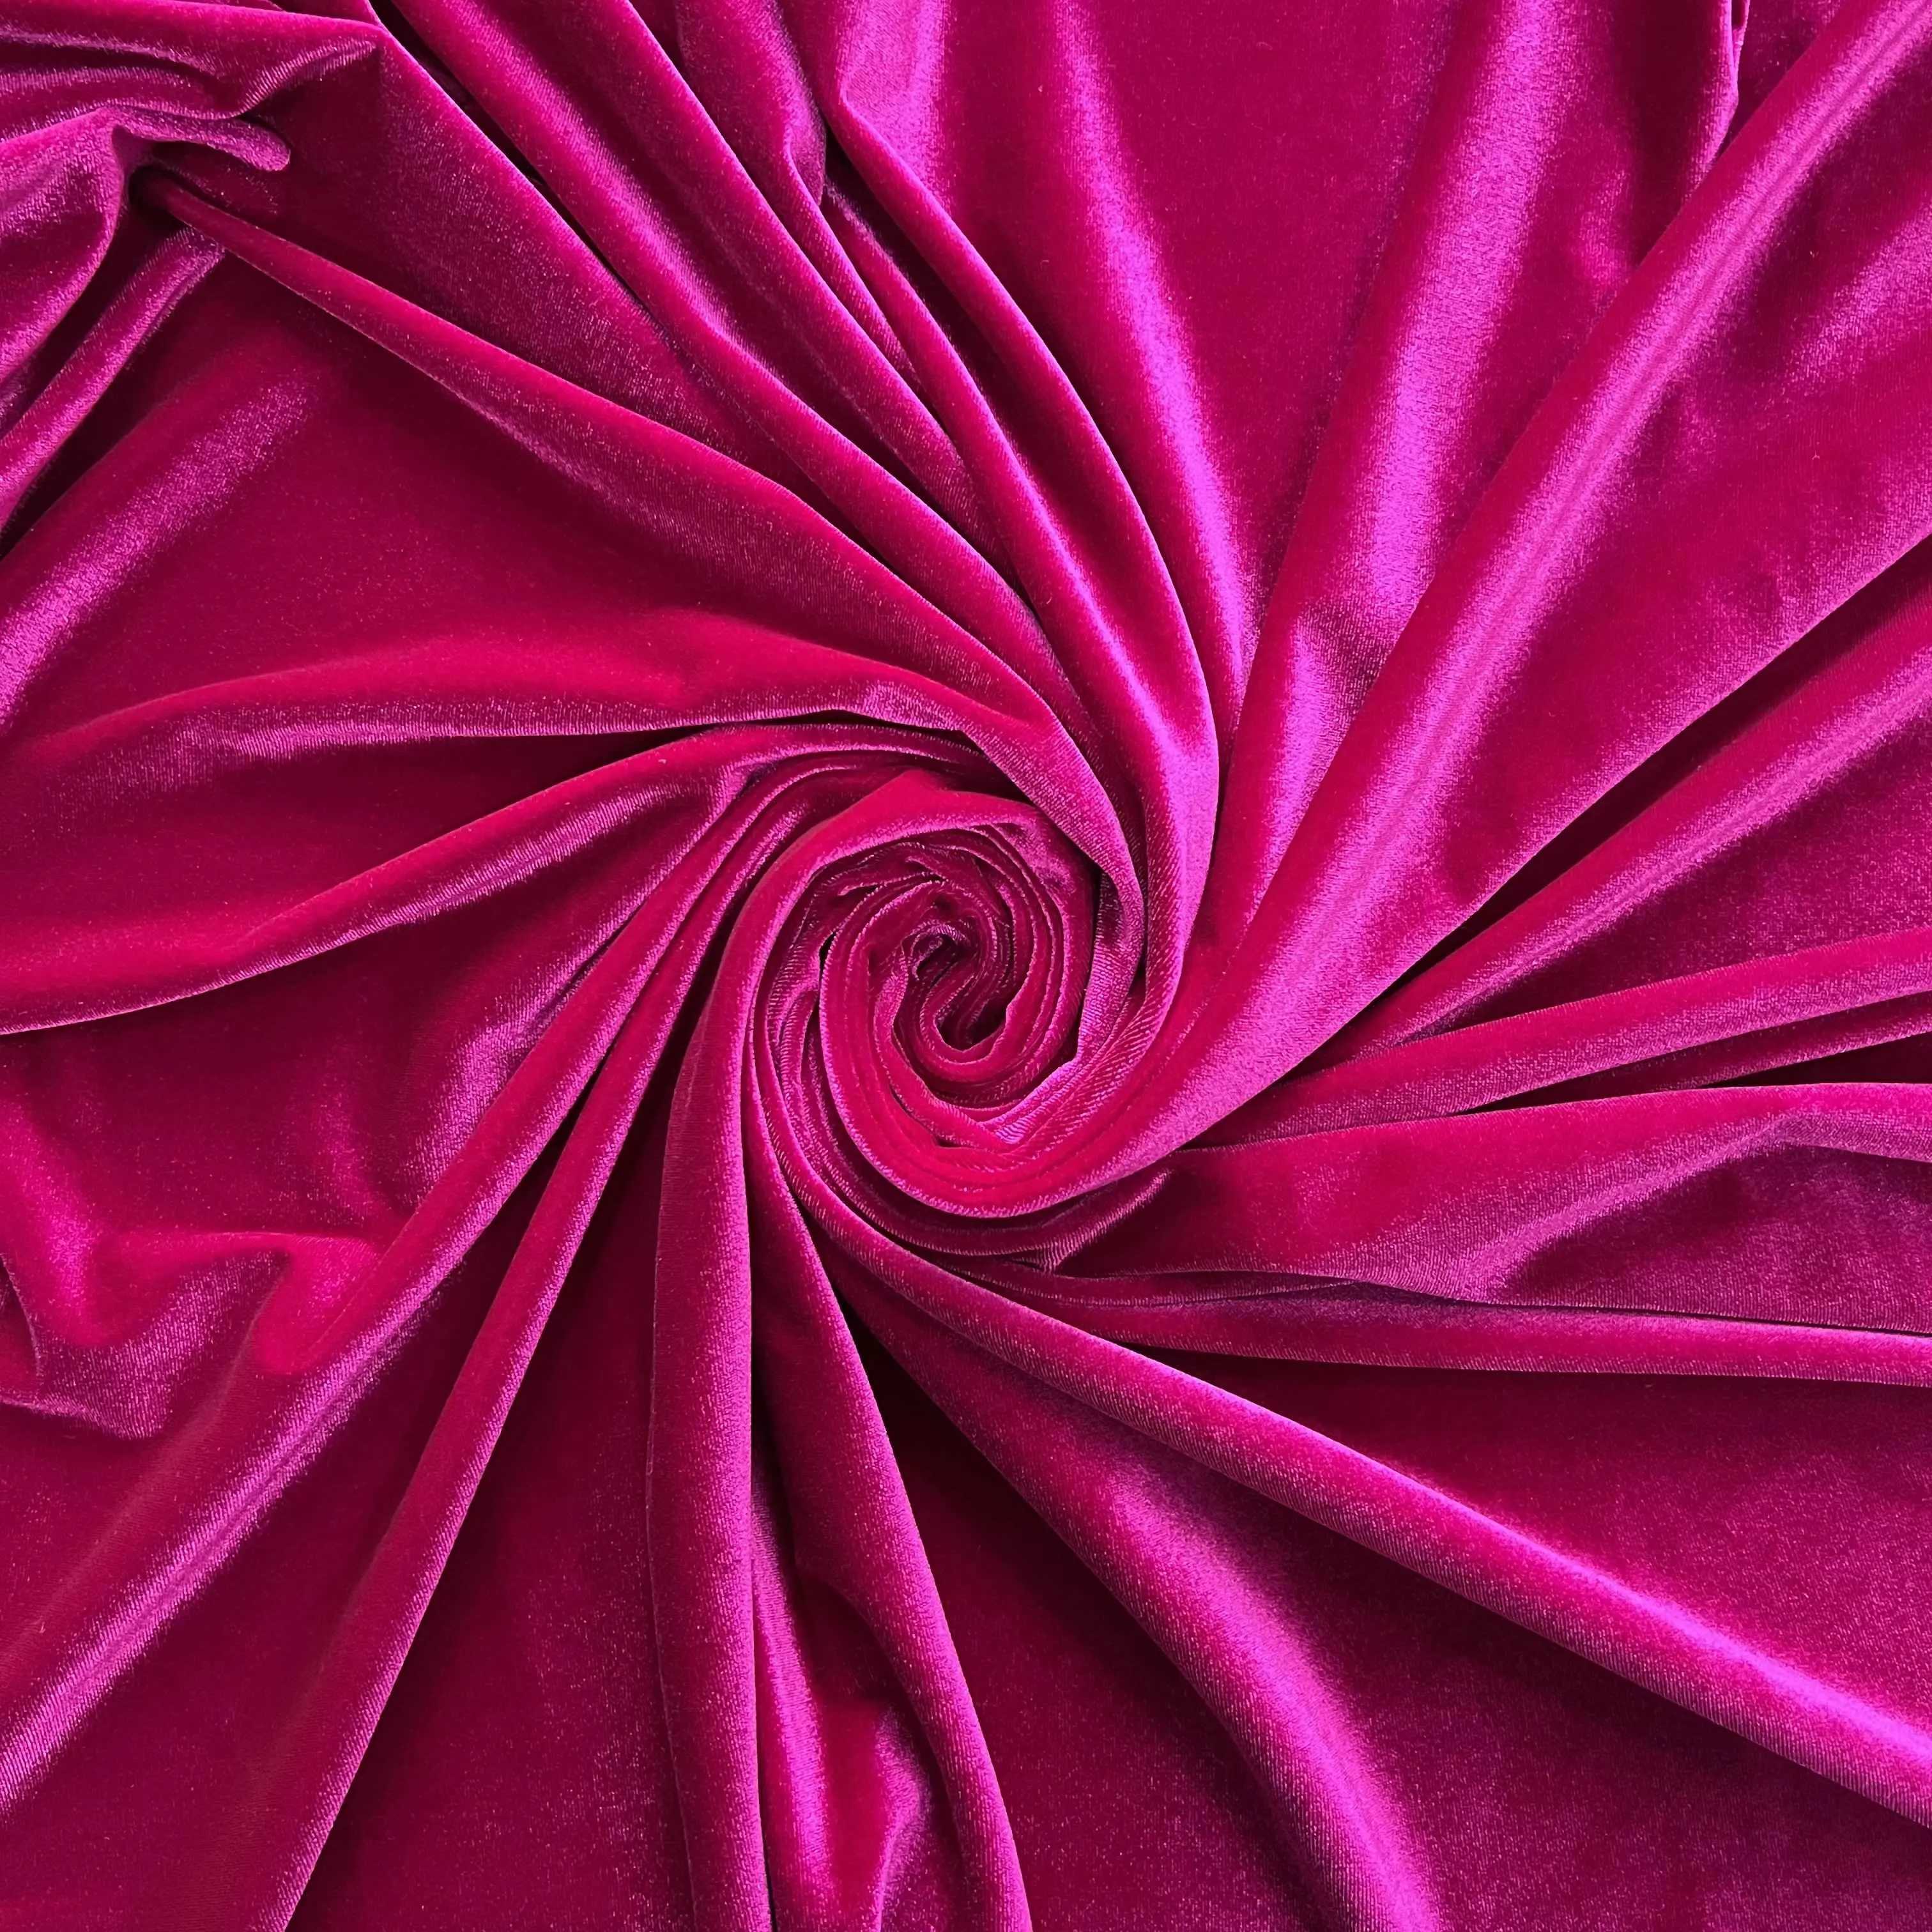 Yeni liste kore rahat yumuşak türk kadife kumas polyester spandex kanepe bordo ipek kadife giysi kumaşı